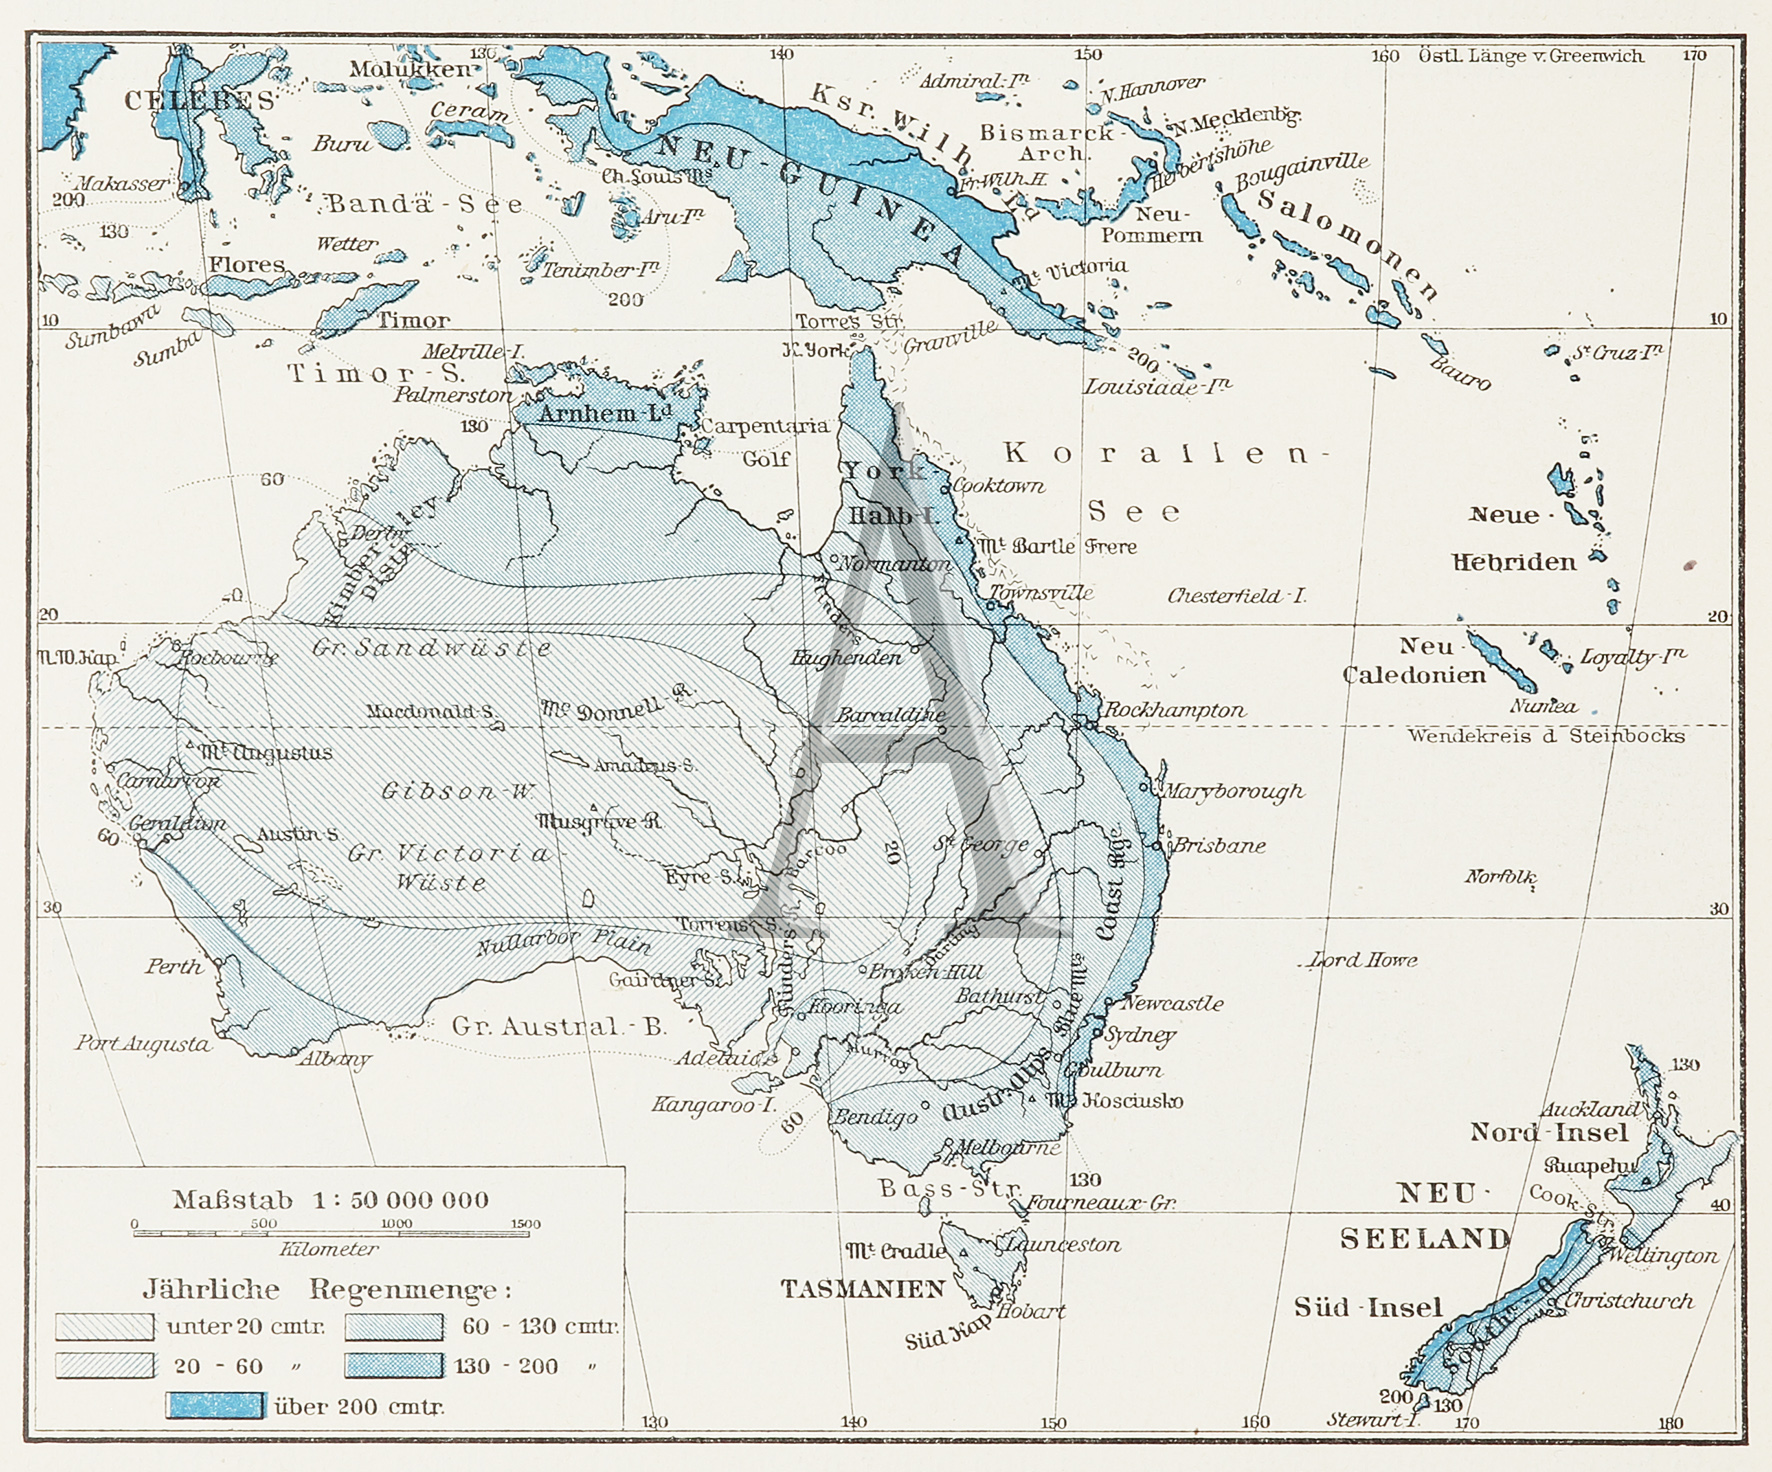 Karte der Regenverteilung in Australien und Neuseeland - Antique Print from 1887